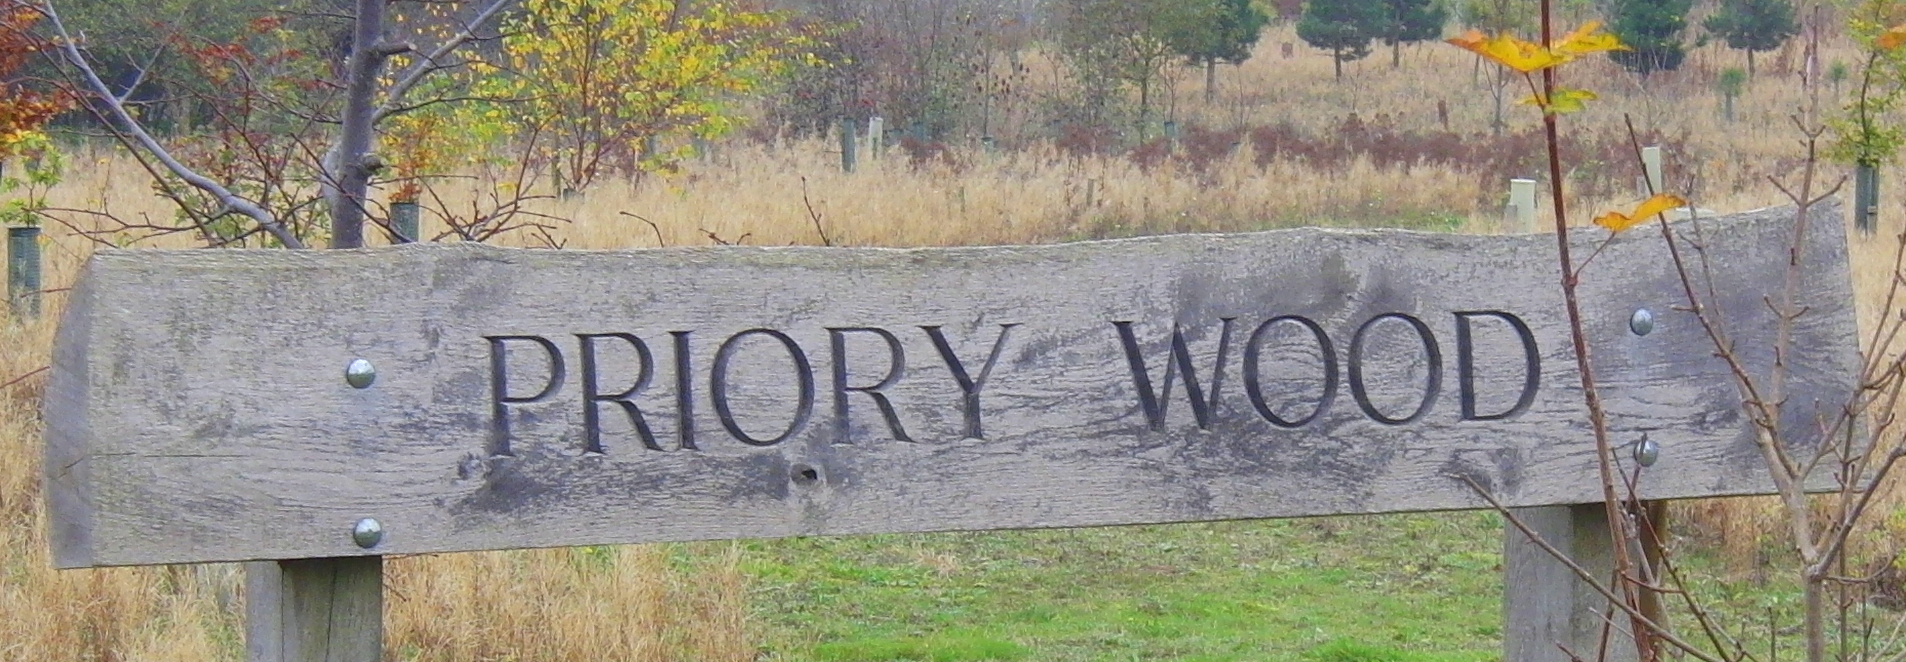 141111 CIMG1230 Priory Wood